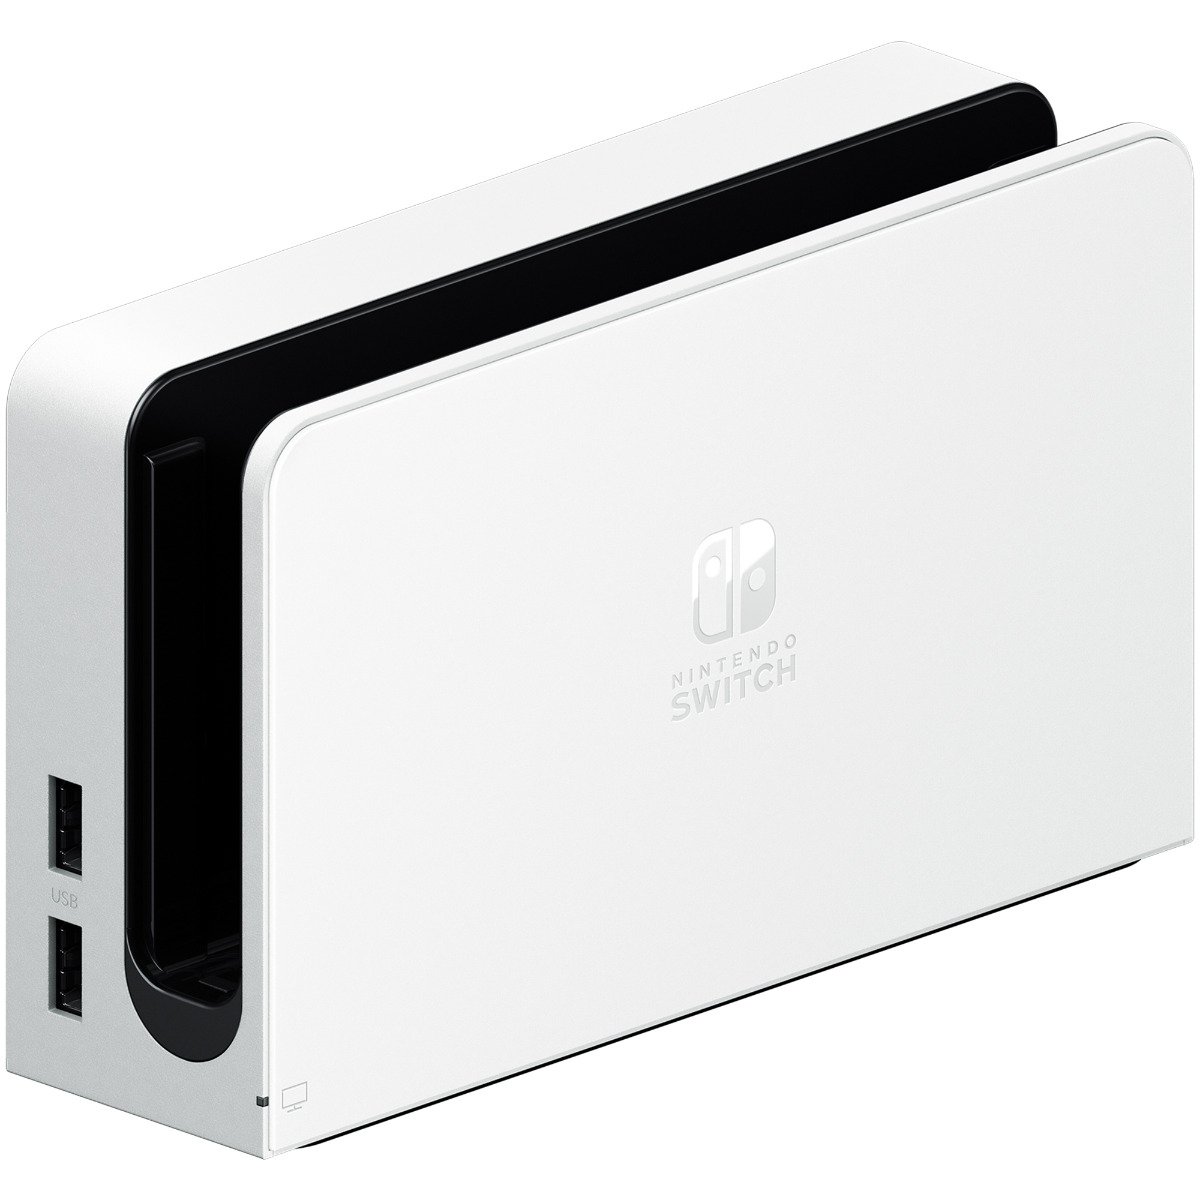 Nintendo Switch Oled Dock White Product Image